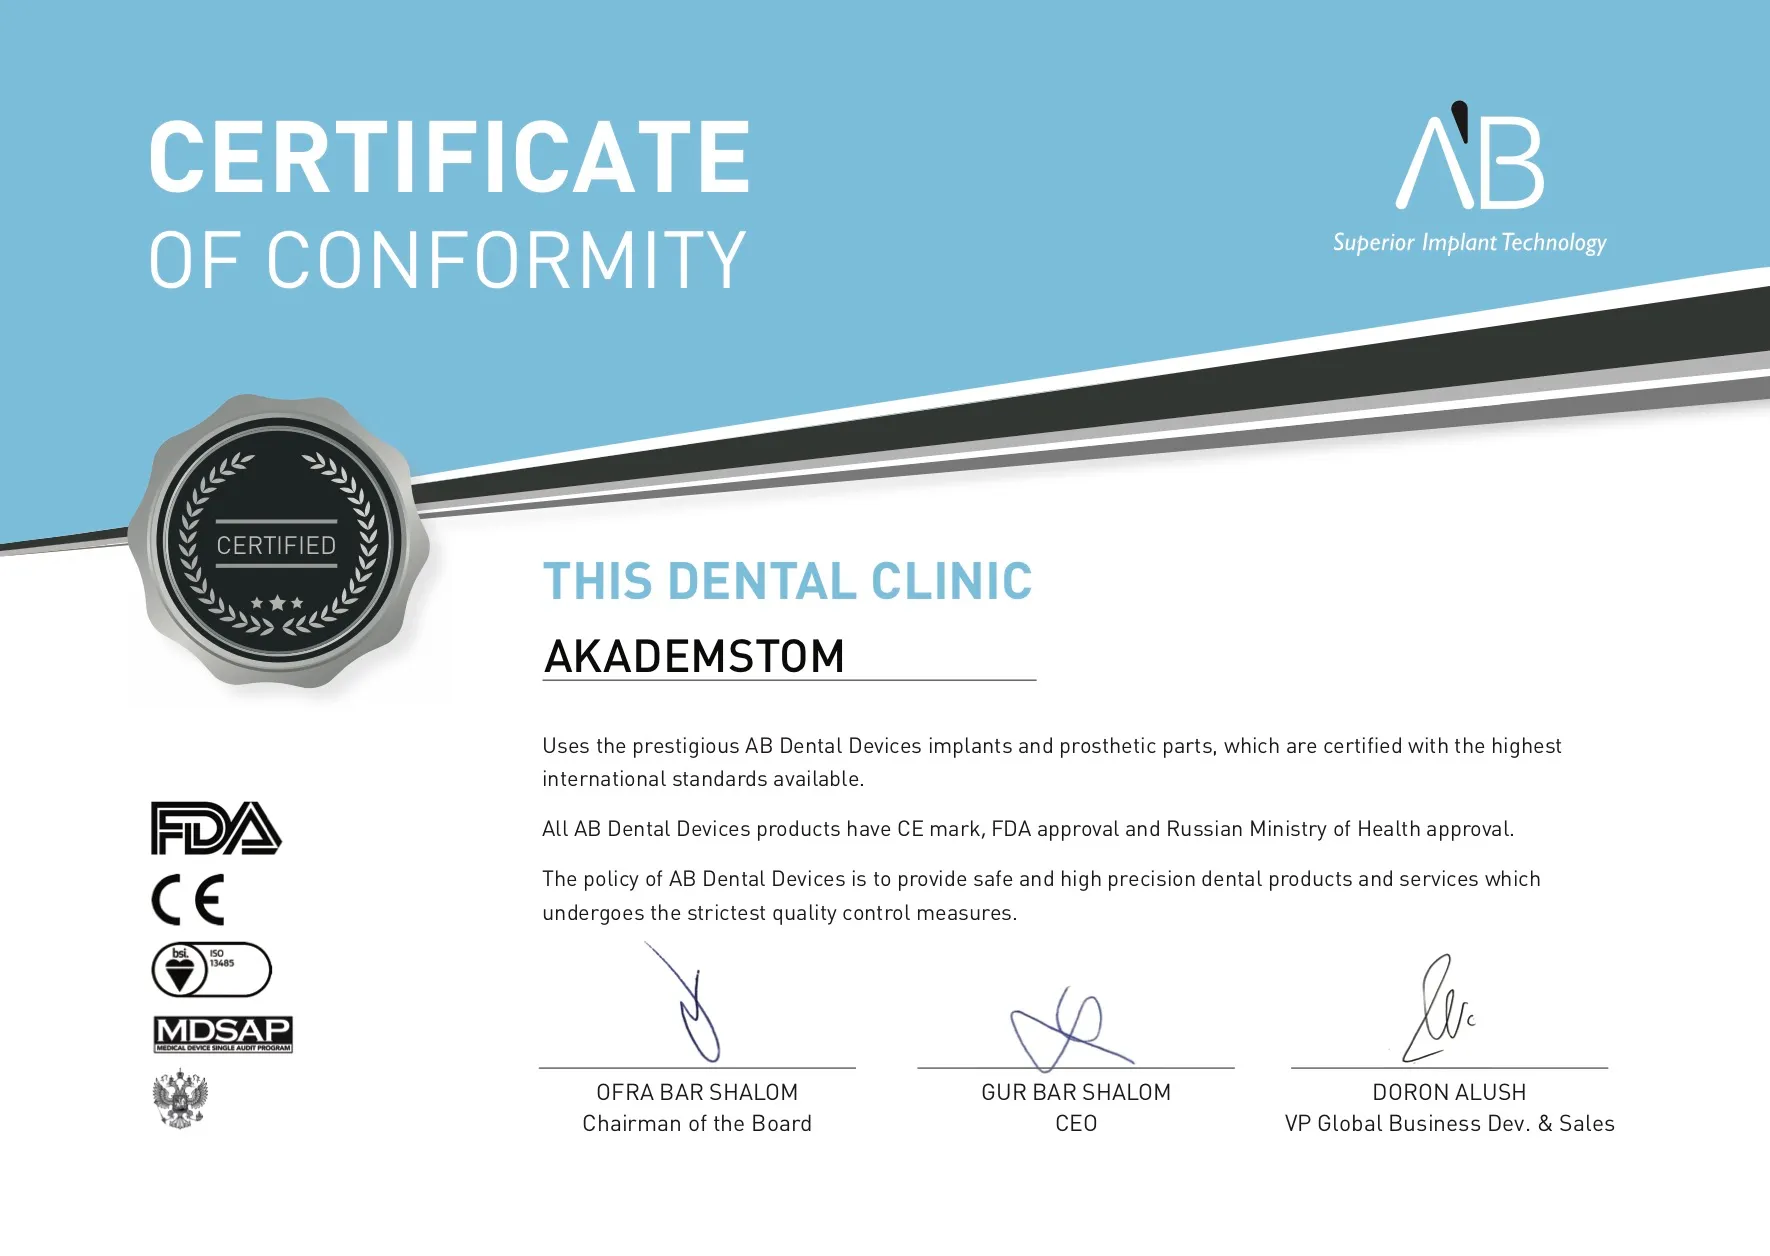 Сертификат о партнерстве клиники «Академстом» с AB Dental